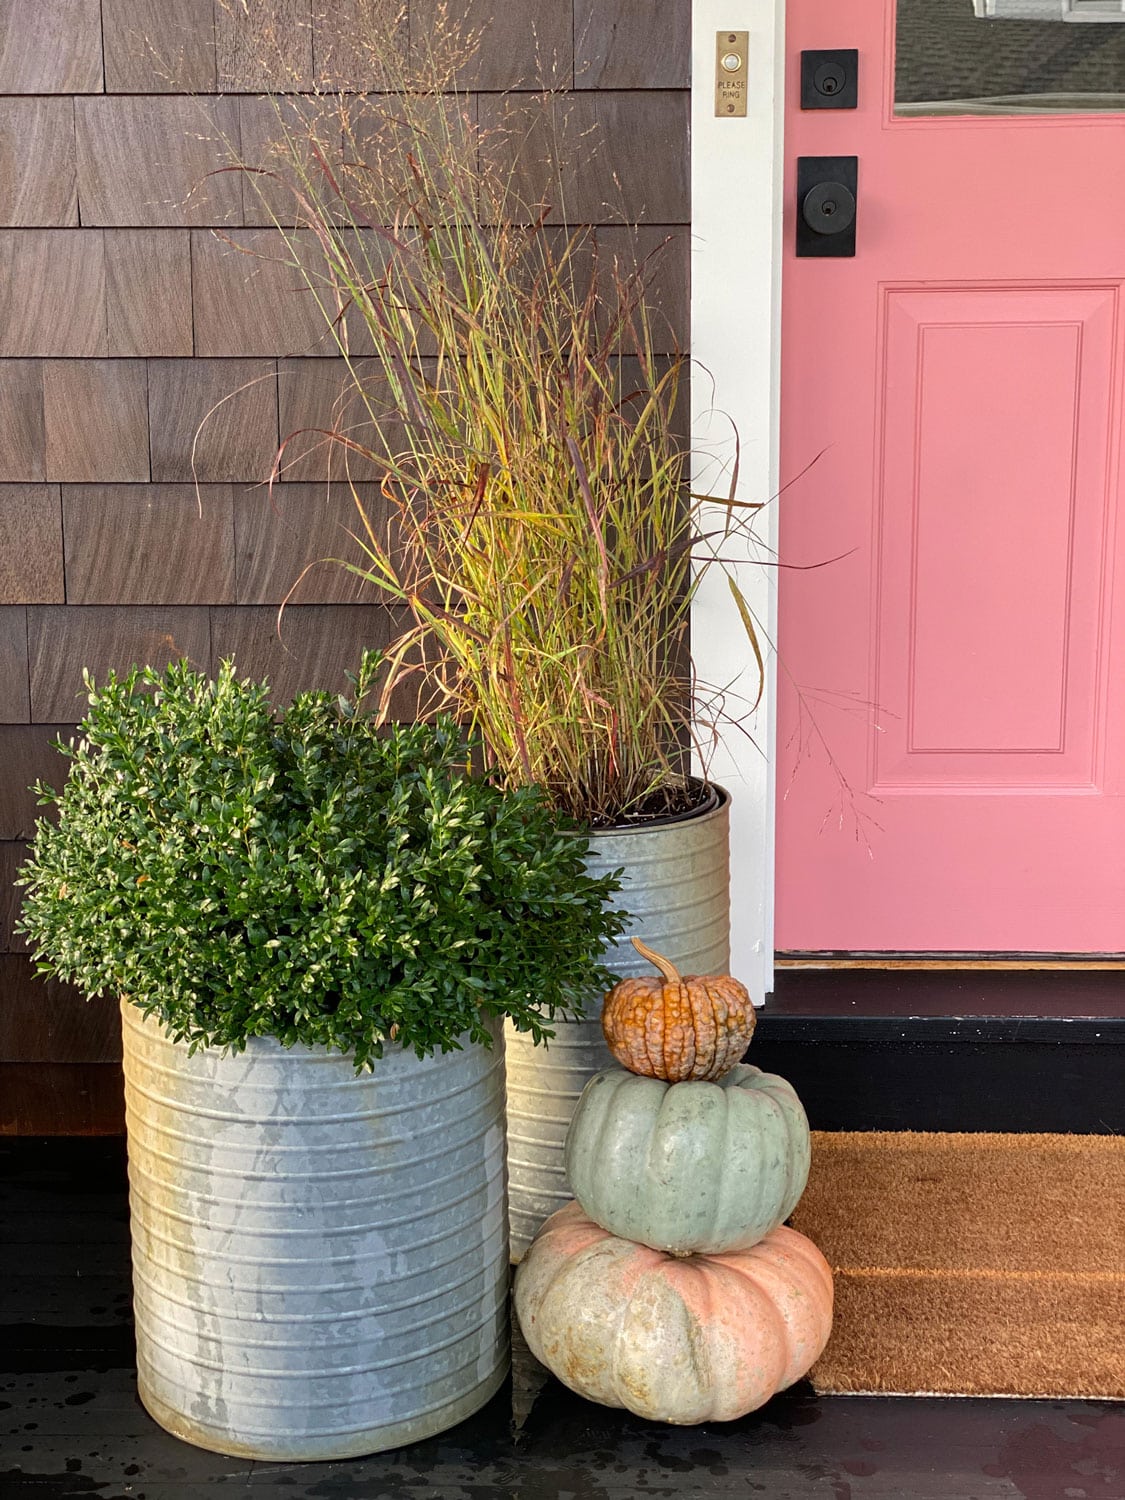 DIY Paint Front Door Interior — Why I Love My Pink Front Door